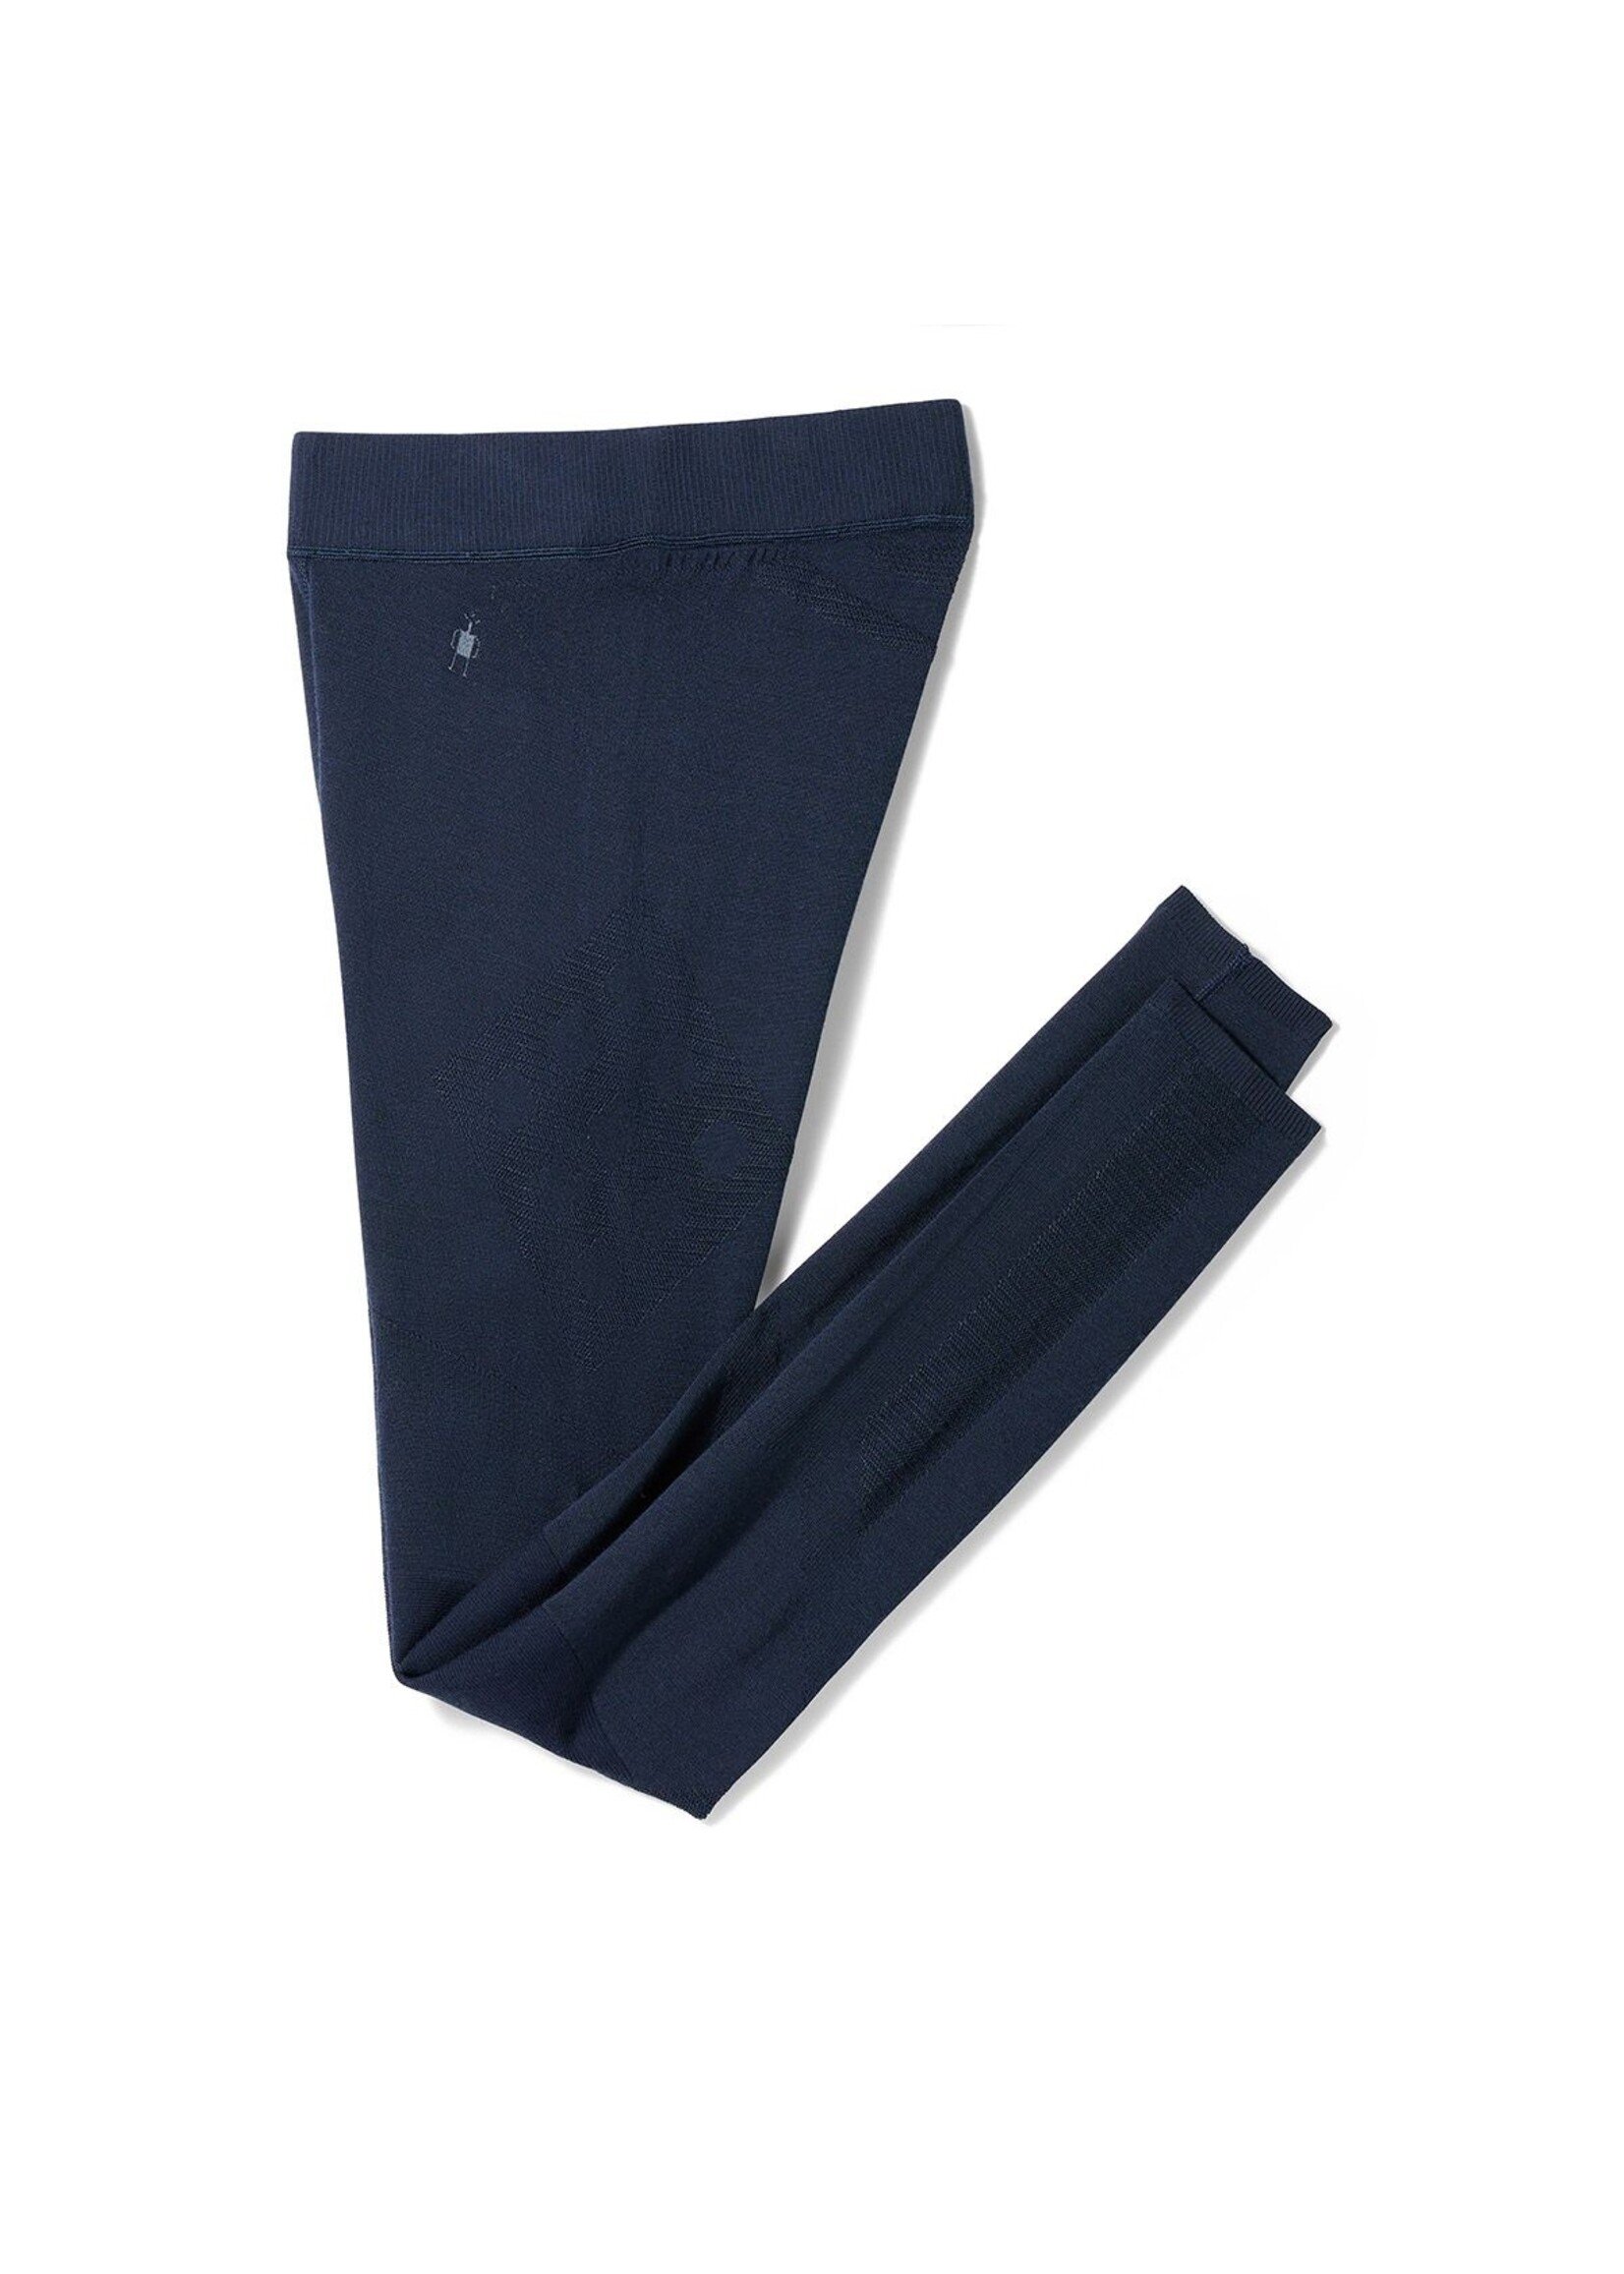 SMARTWOOL Pantalon couche de base Intraknit Thermal en mérinos Marine foncé-Femme